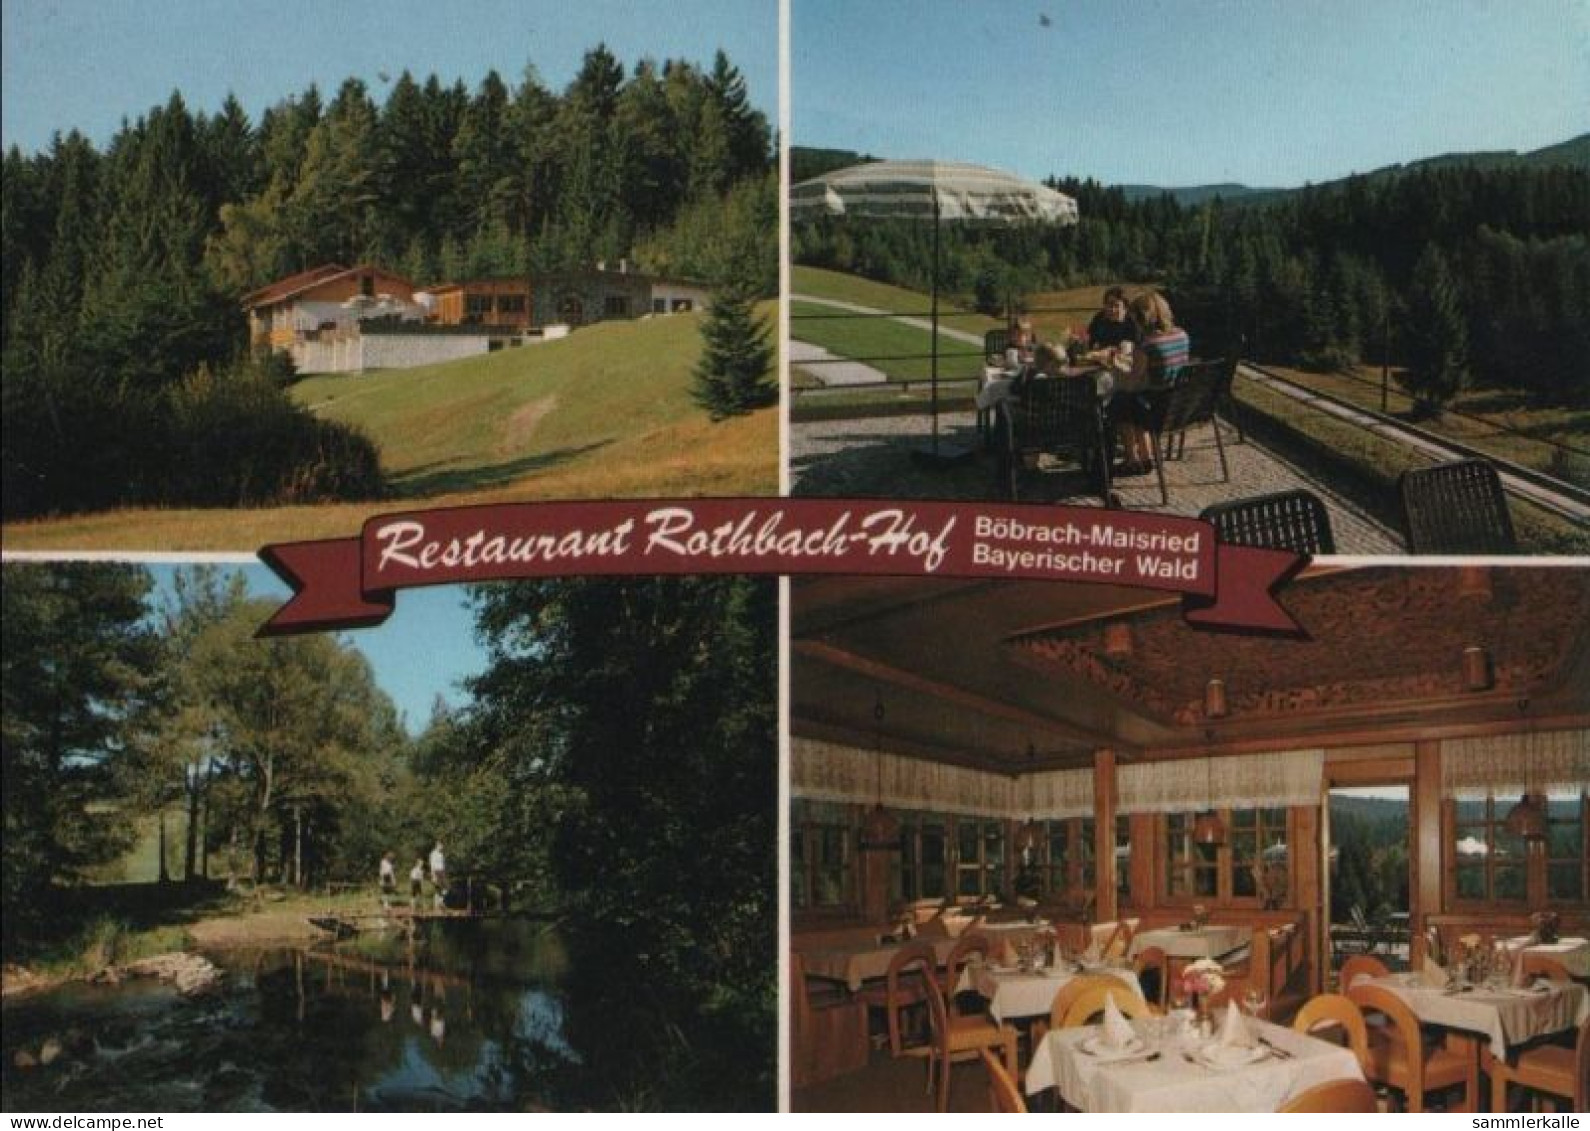 89000 - Böbrach - Restaurant Rothbach-Hof - Ca. 1985 - Regen